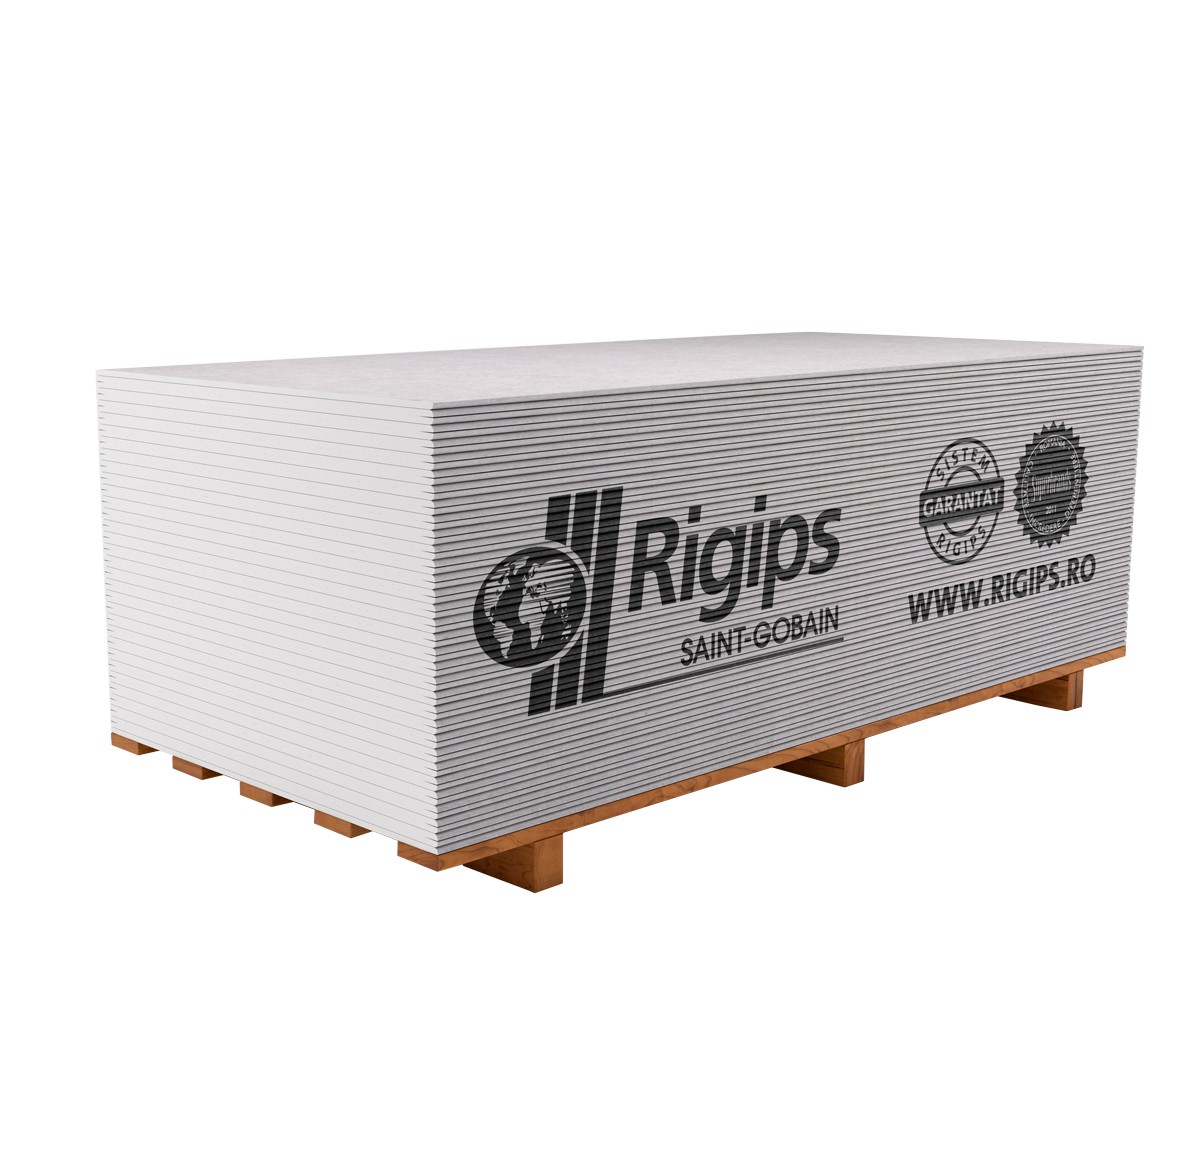 Placi gips carton uzuale - Placa gips carton Rigips RB 12.5  x  1200  x  2600 mm, https:maxbau.ro